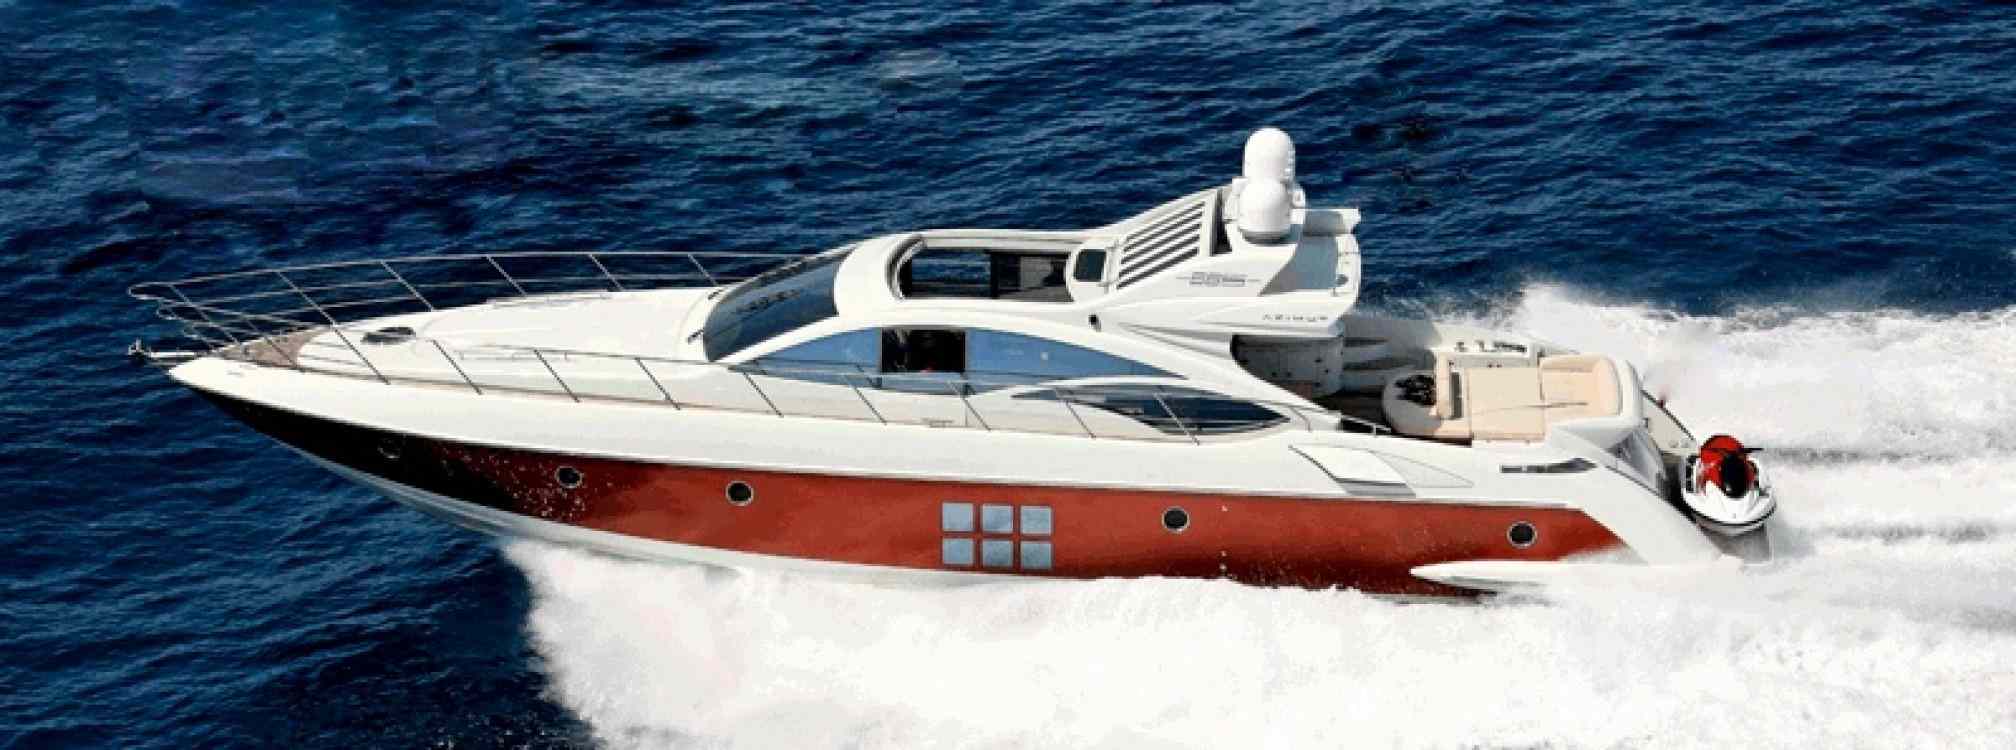 Azimut 68 Sport yacht charter sailing